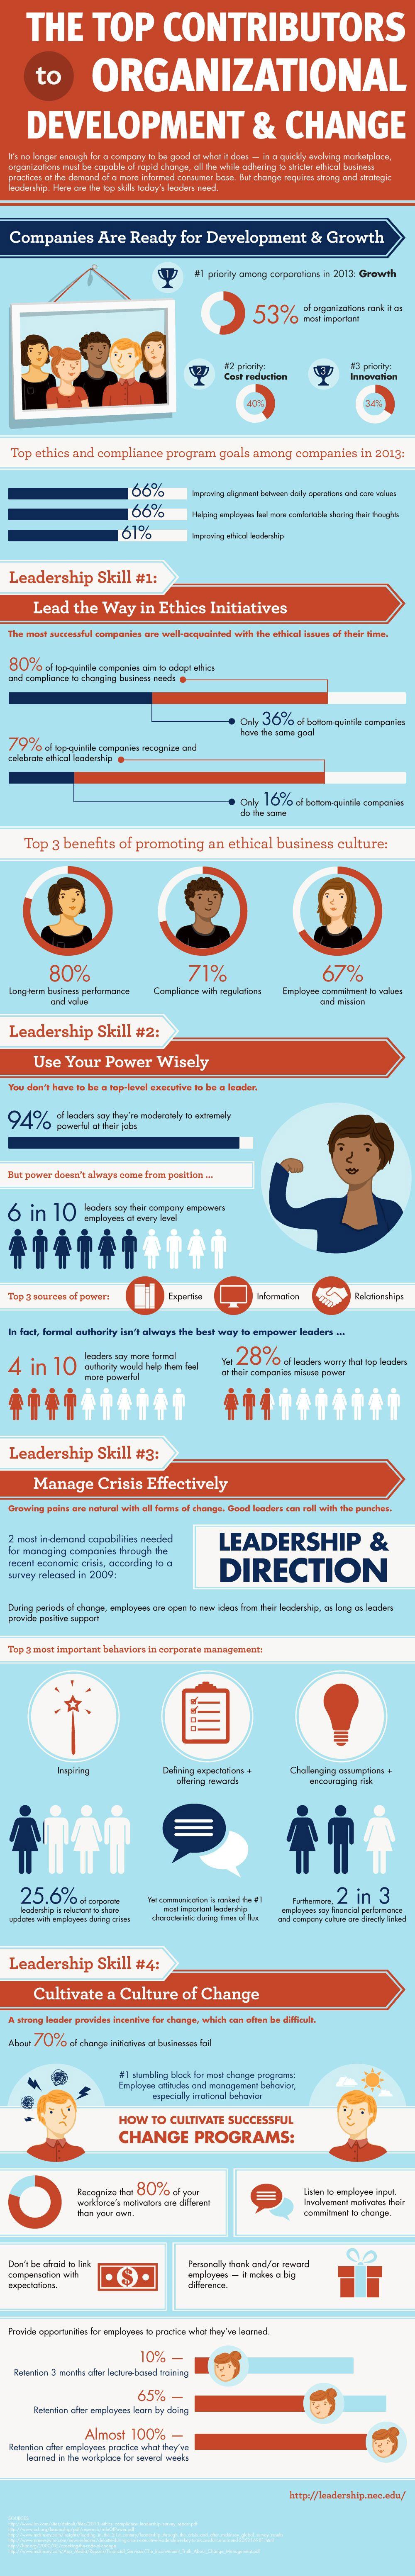 Leadership skills_Lifehack